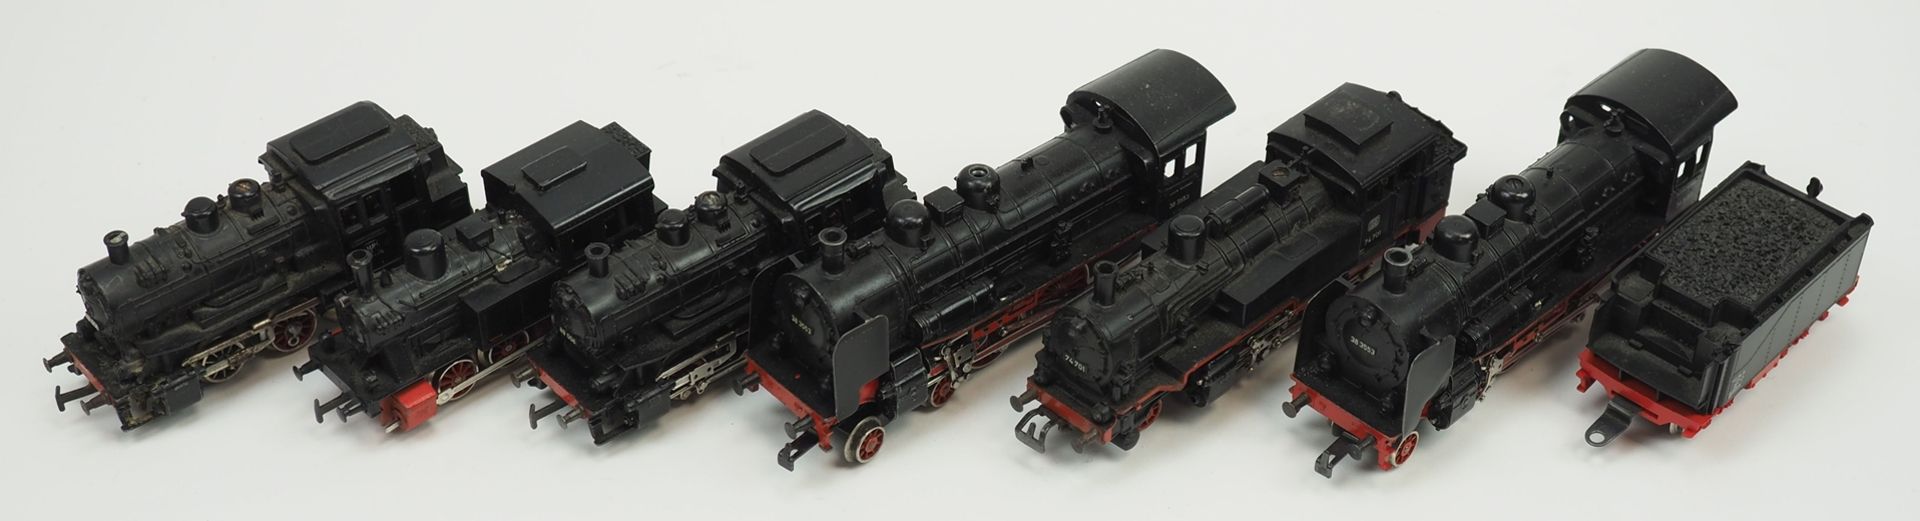 H0 Eisenbahnen - 7 Lokomotiven. - Bild 2 aus 2